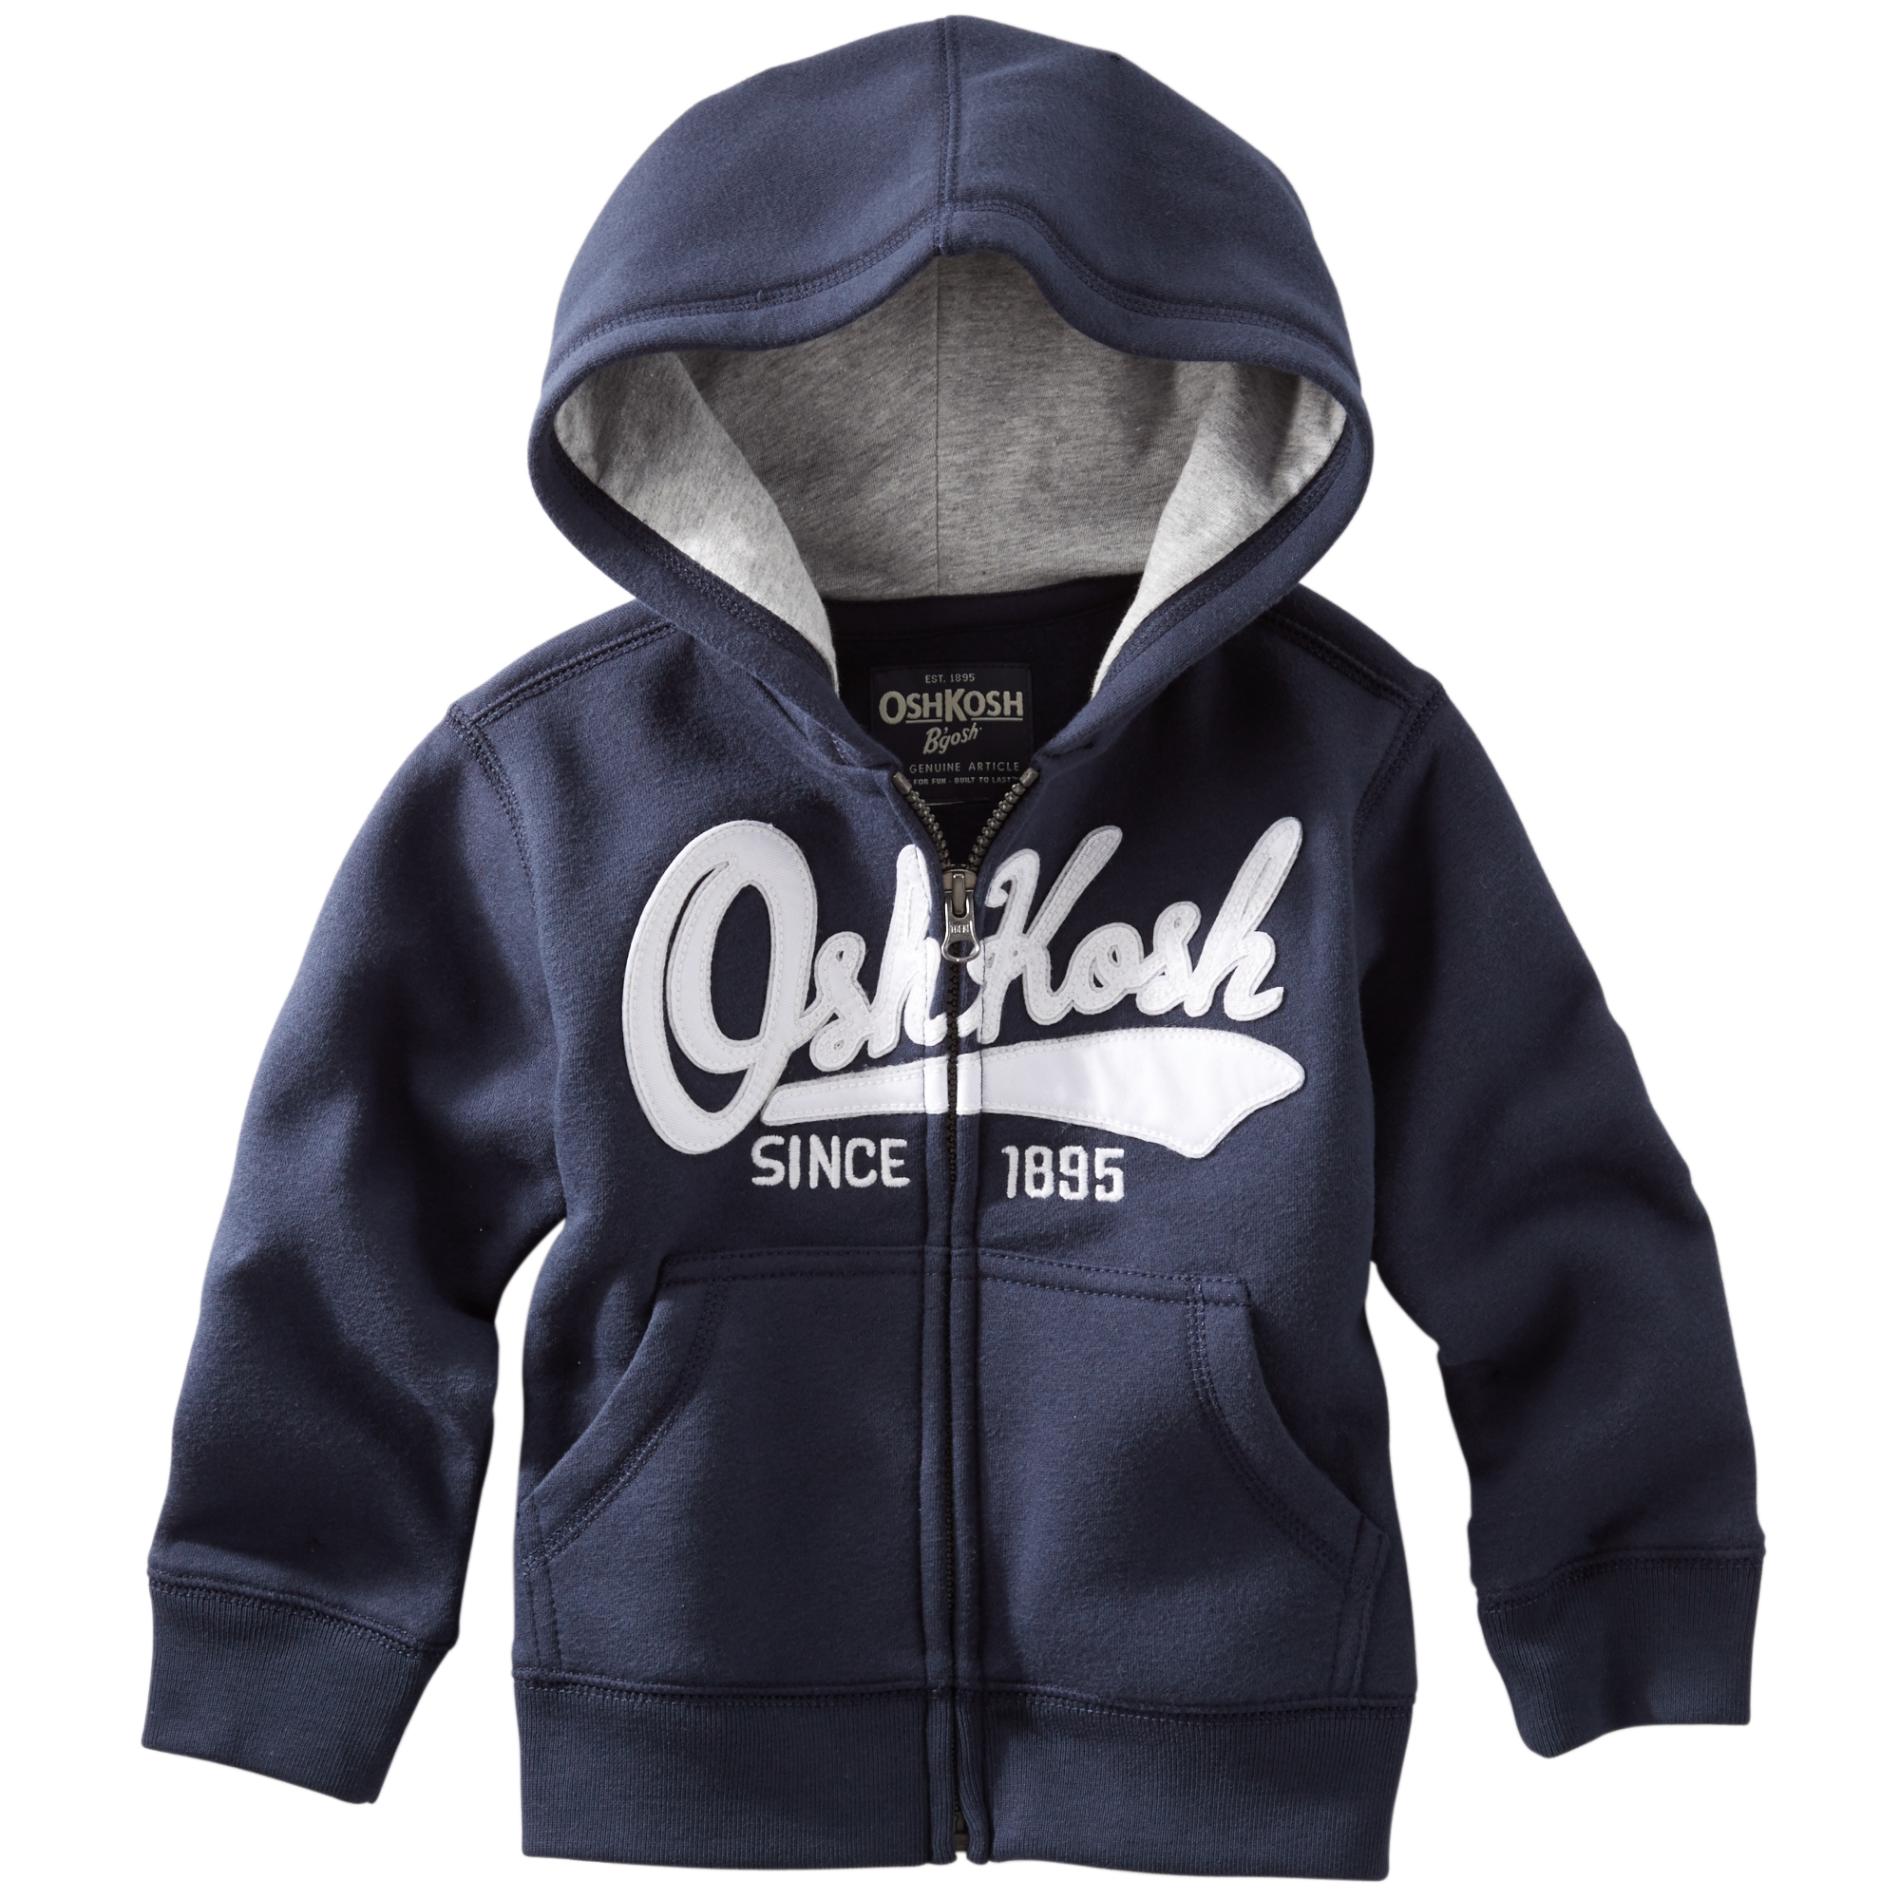 OshKosh Newborn & Infant Toddler Boy's Hoodie Jacket